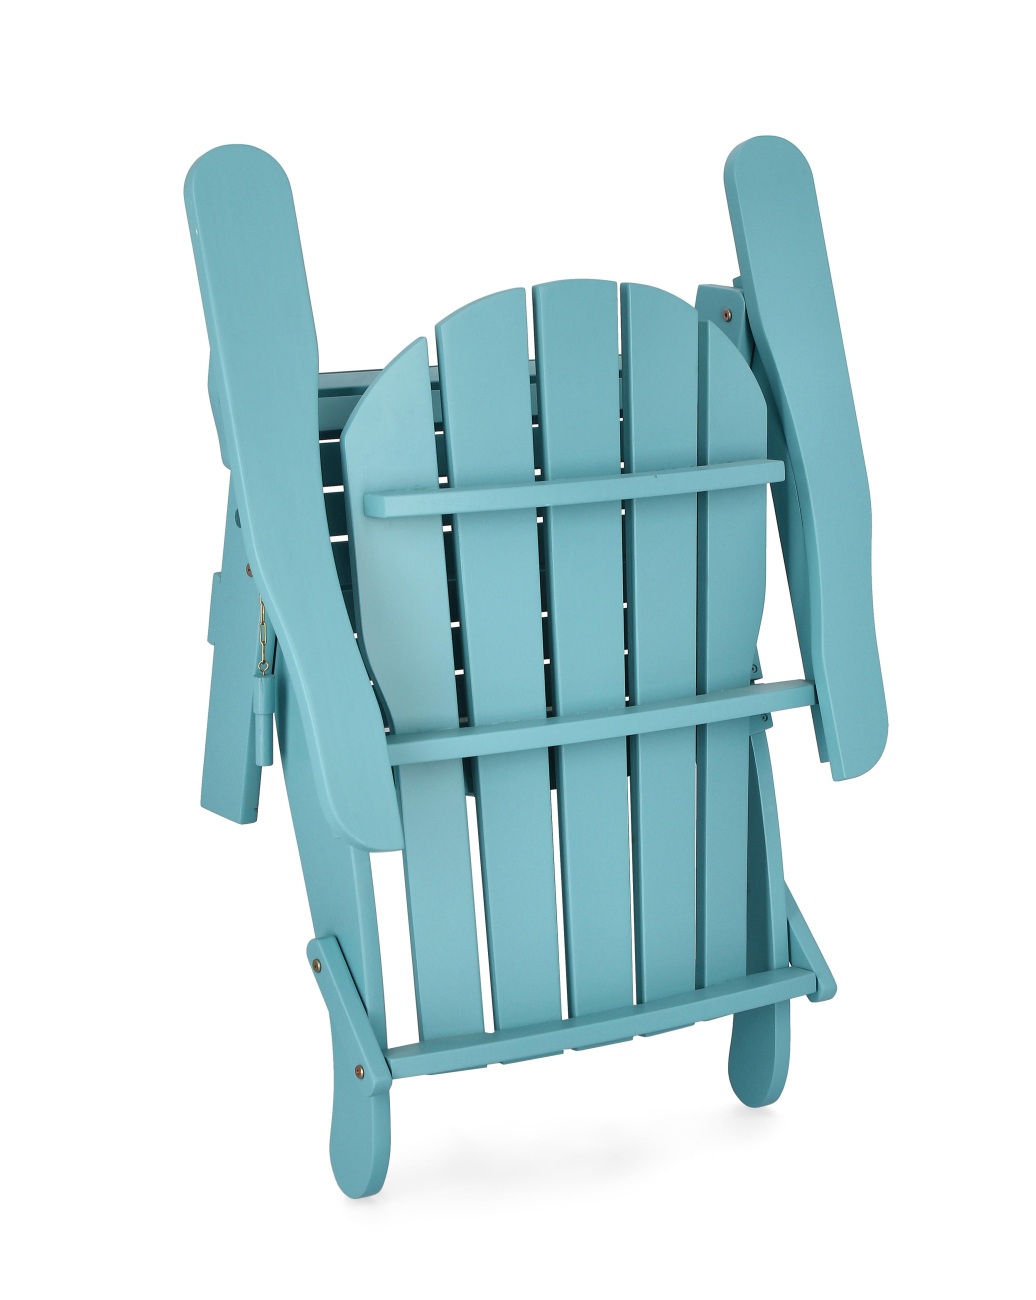 Der Gartensessel Filadelfia überzeugt mit seinem modernen Design. Gefertigt wurde er aus Akzienholz, welches einen hellblau Farbton besitzt. Das Gestell ist auch aus Akazienholz. Der Gartensessel besitzt eine Sitzhöhe von 37 cm und ist klappbar.